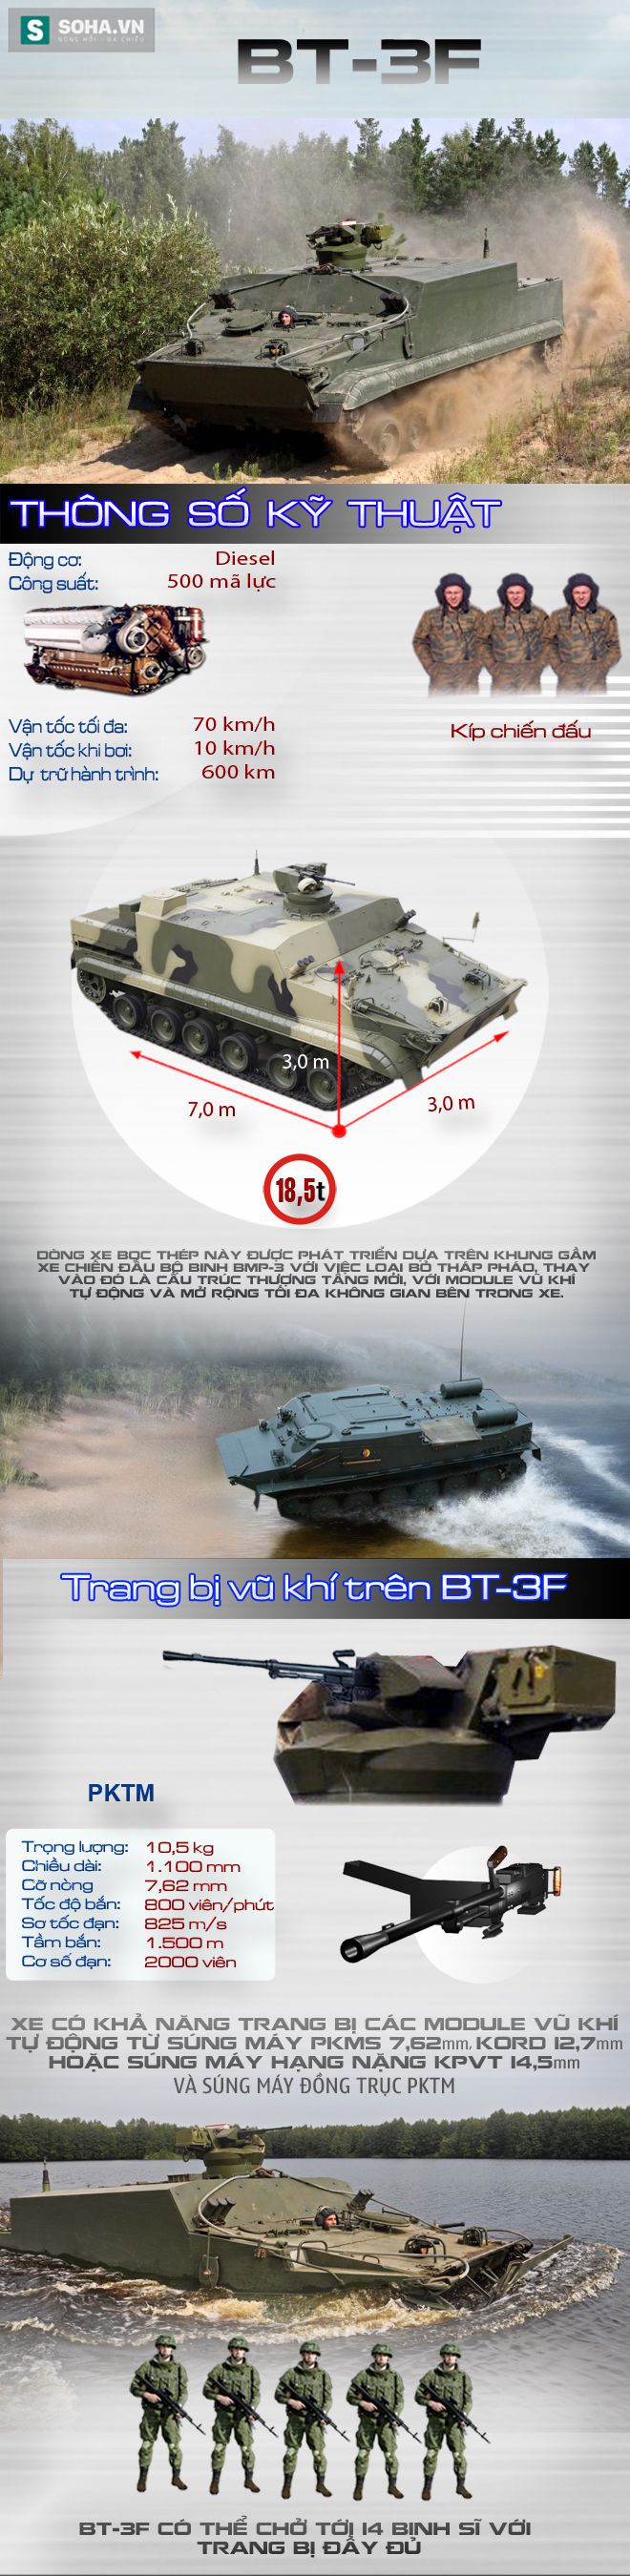 Ứng viên số 1 cho vị trí xe thiết giáp thay thế BTR-50 - Ảnh 1.